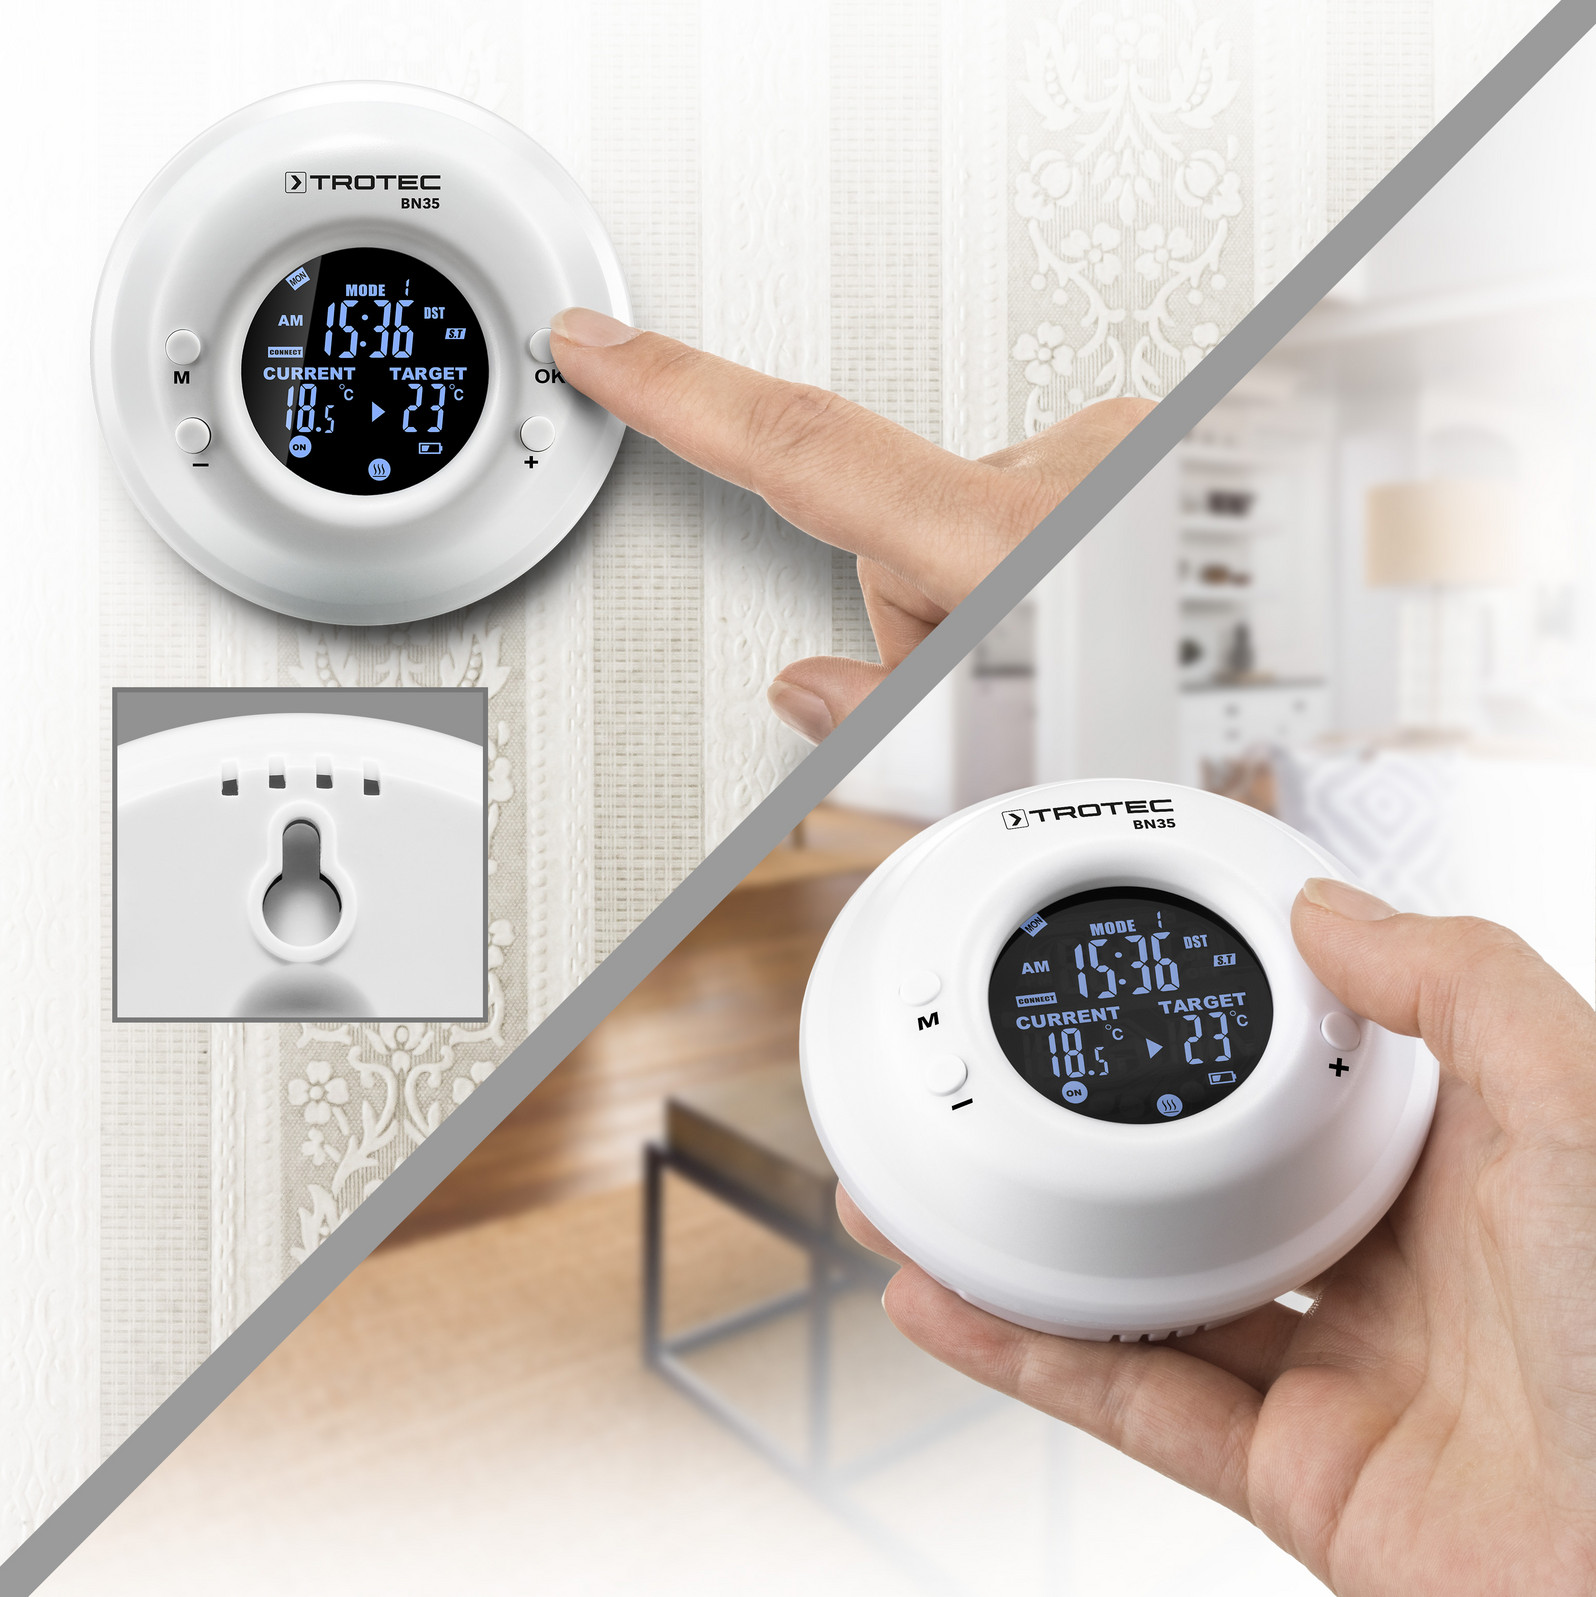 Prise-Thermostat pilotée par la température - CI-ELB-TS10 — chauffage -infrarouge.com